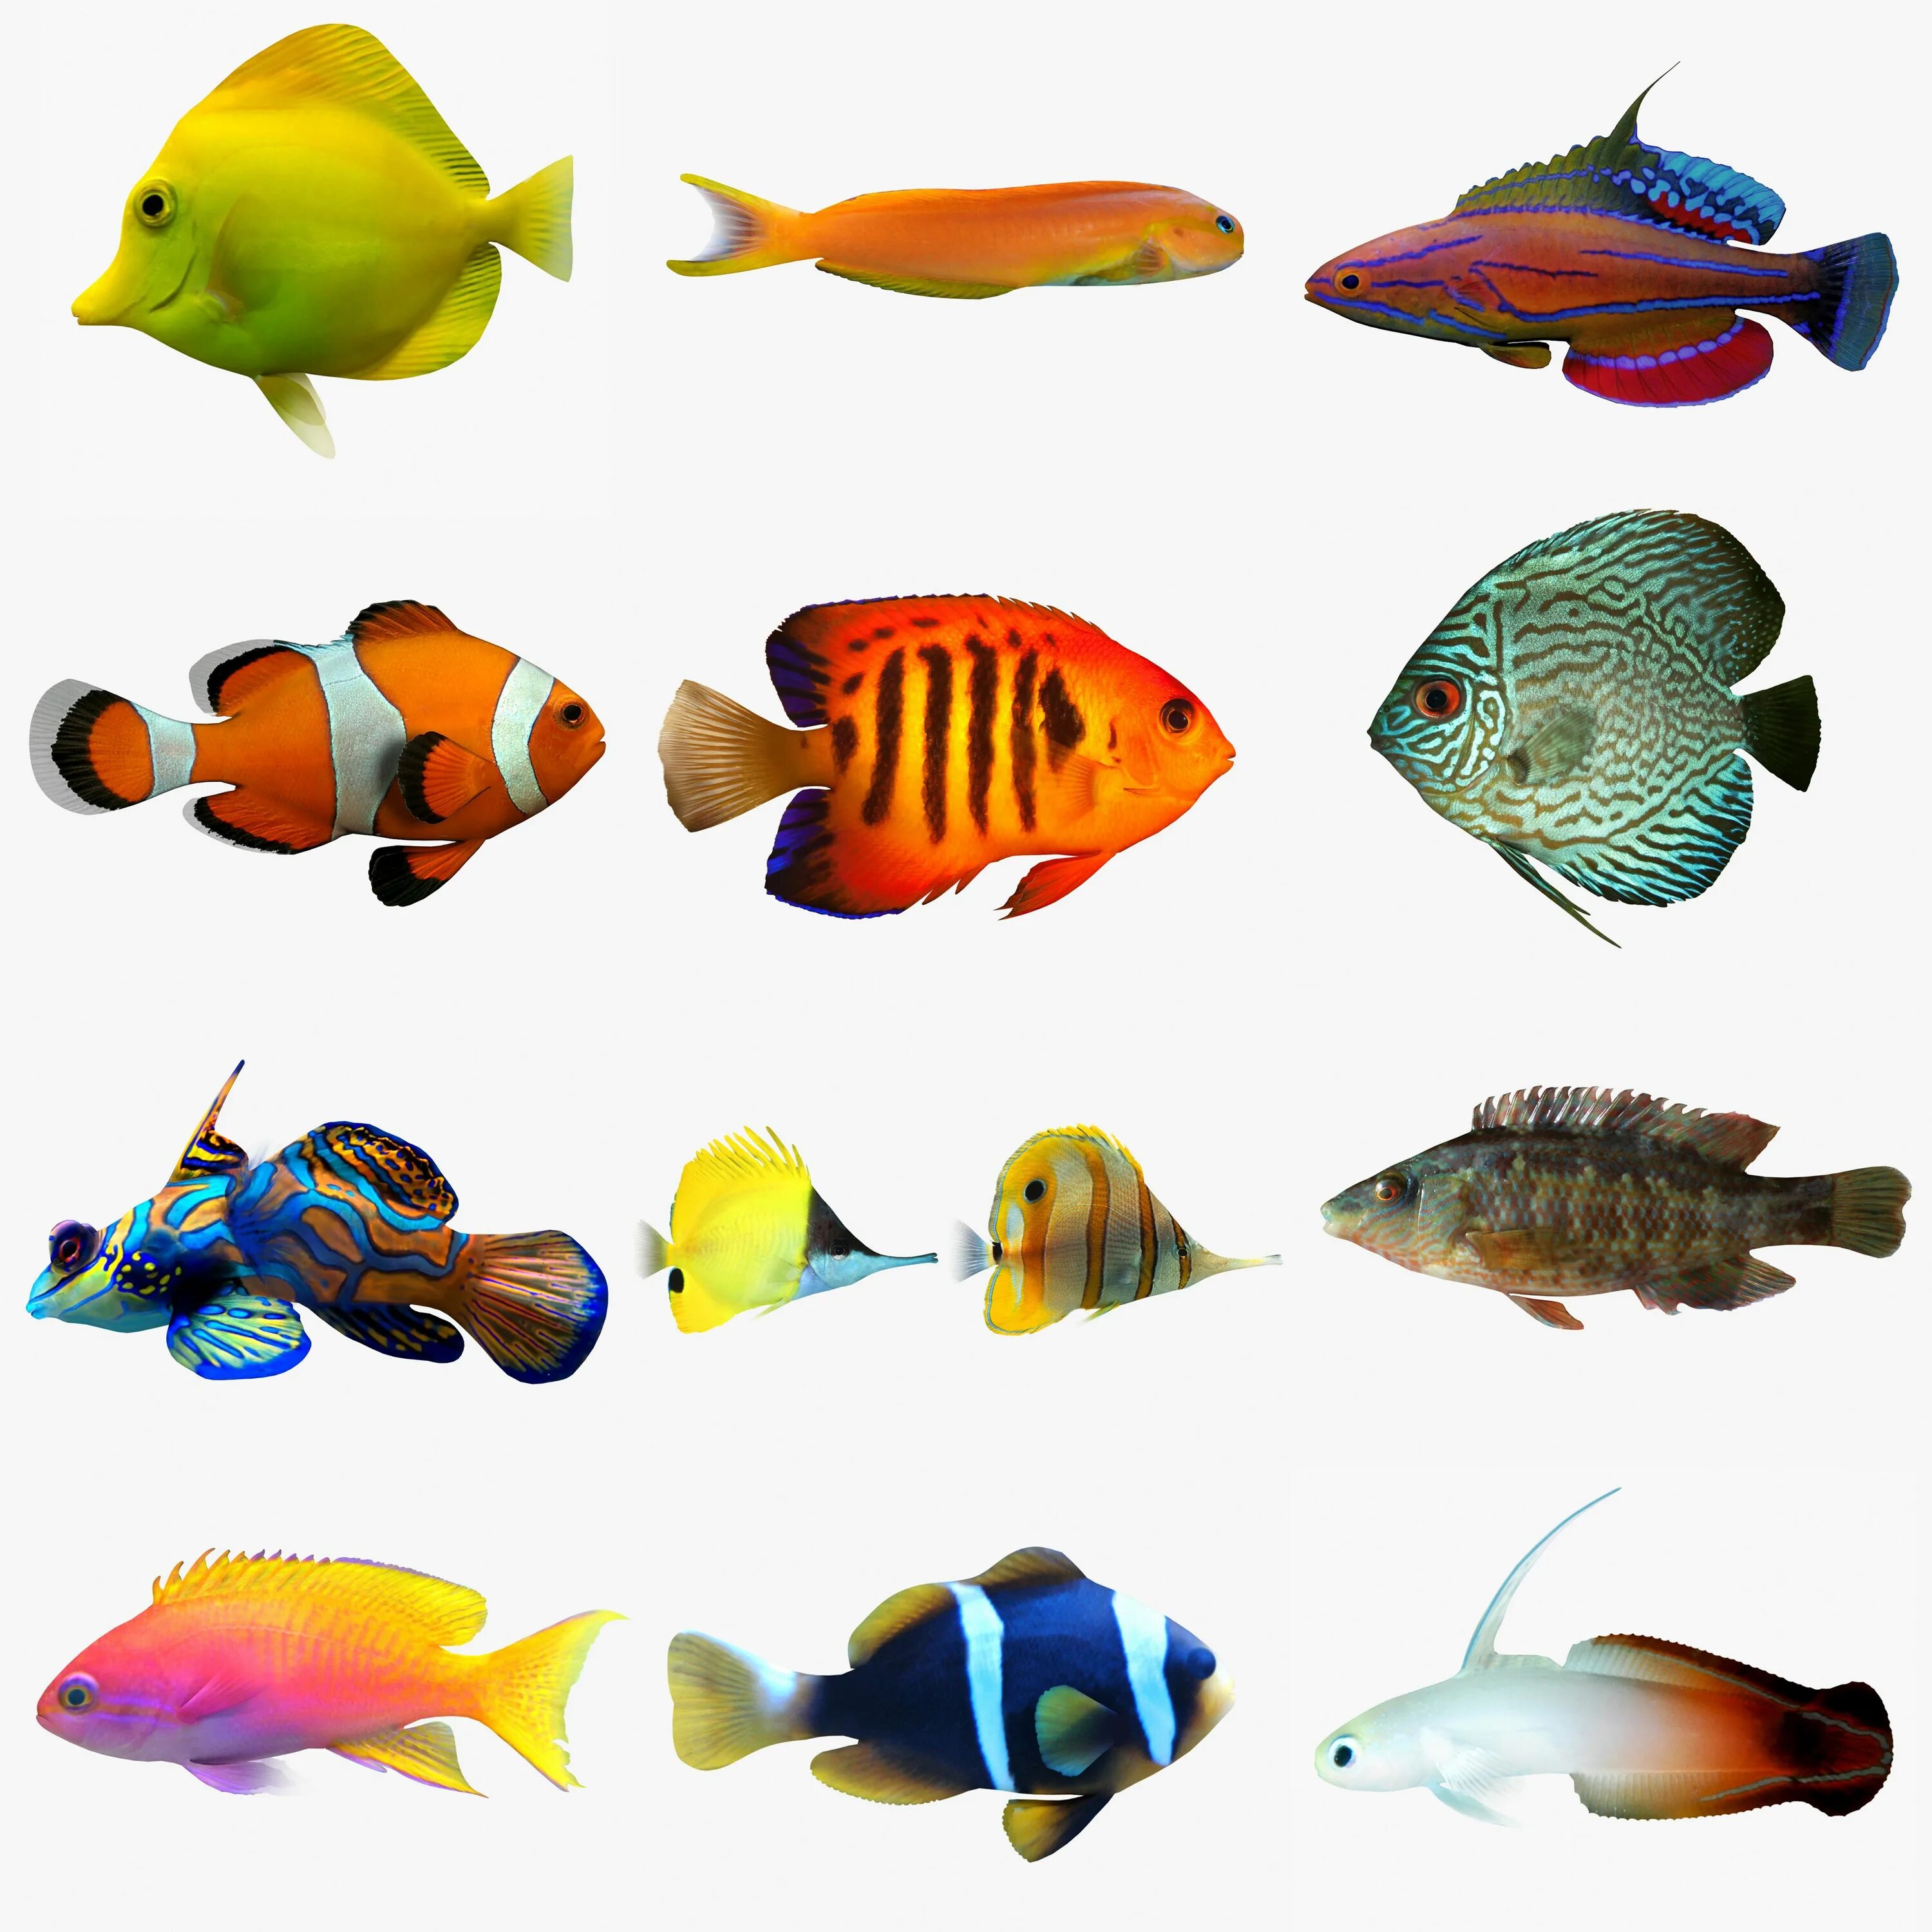 Аквариумные рыбы для детей. Верхоплавающие аквариумные рыбки. Гирики рыбки аквариумные. Моторо рыбка аквариумная. Цветные рыбы.